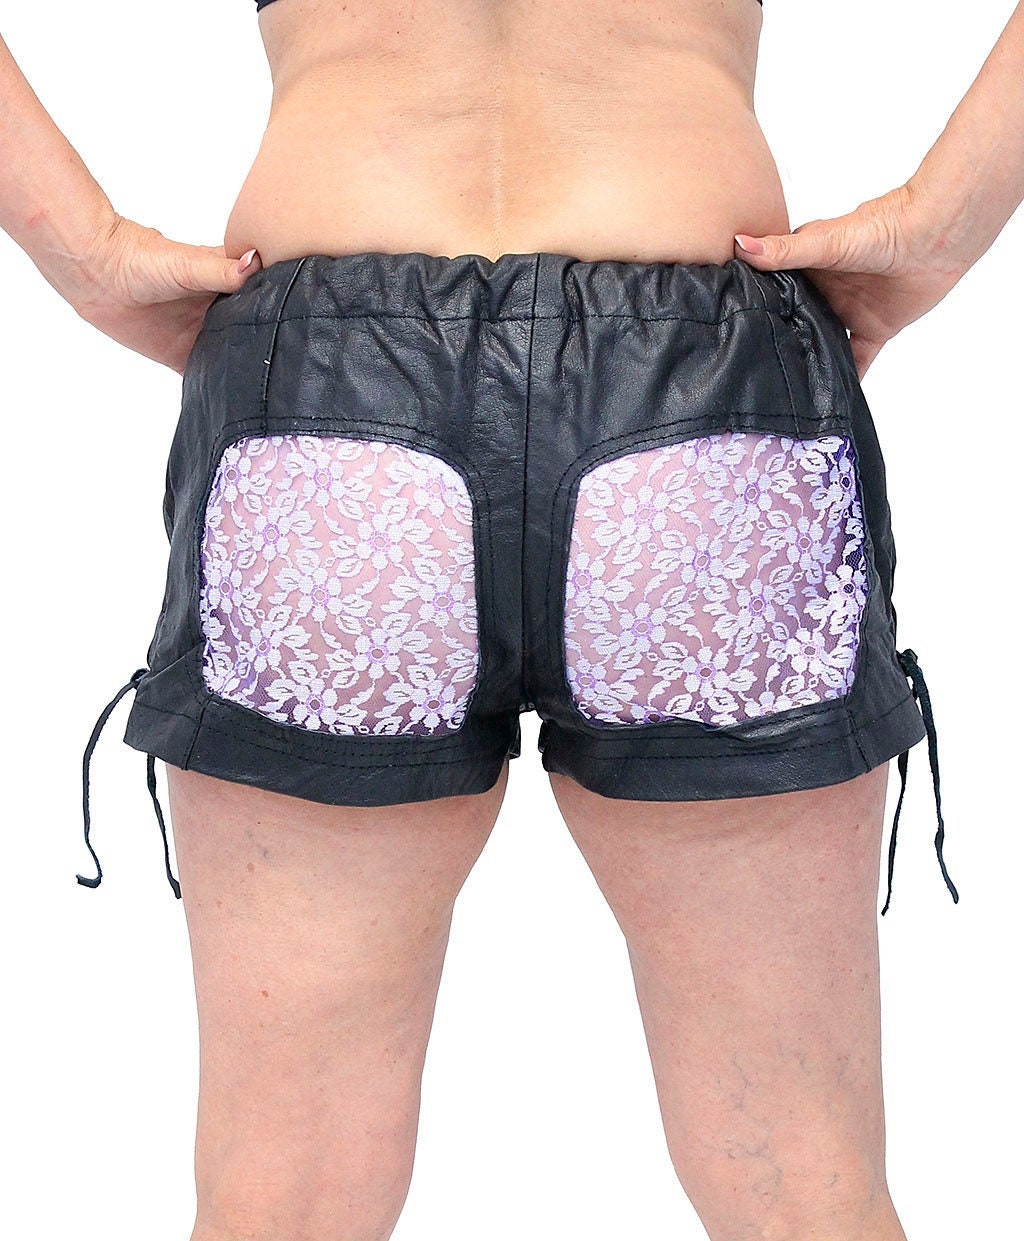 Lace Boxer Shorts 